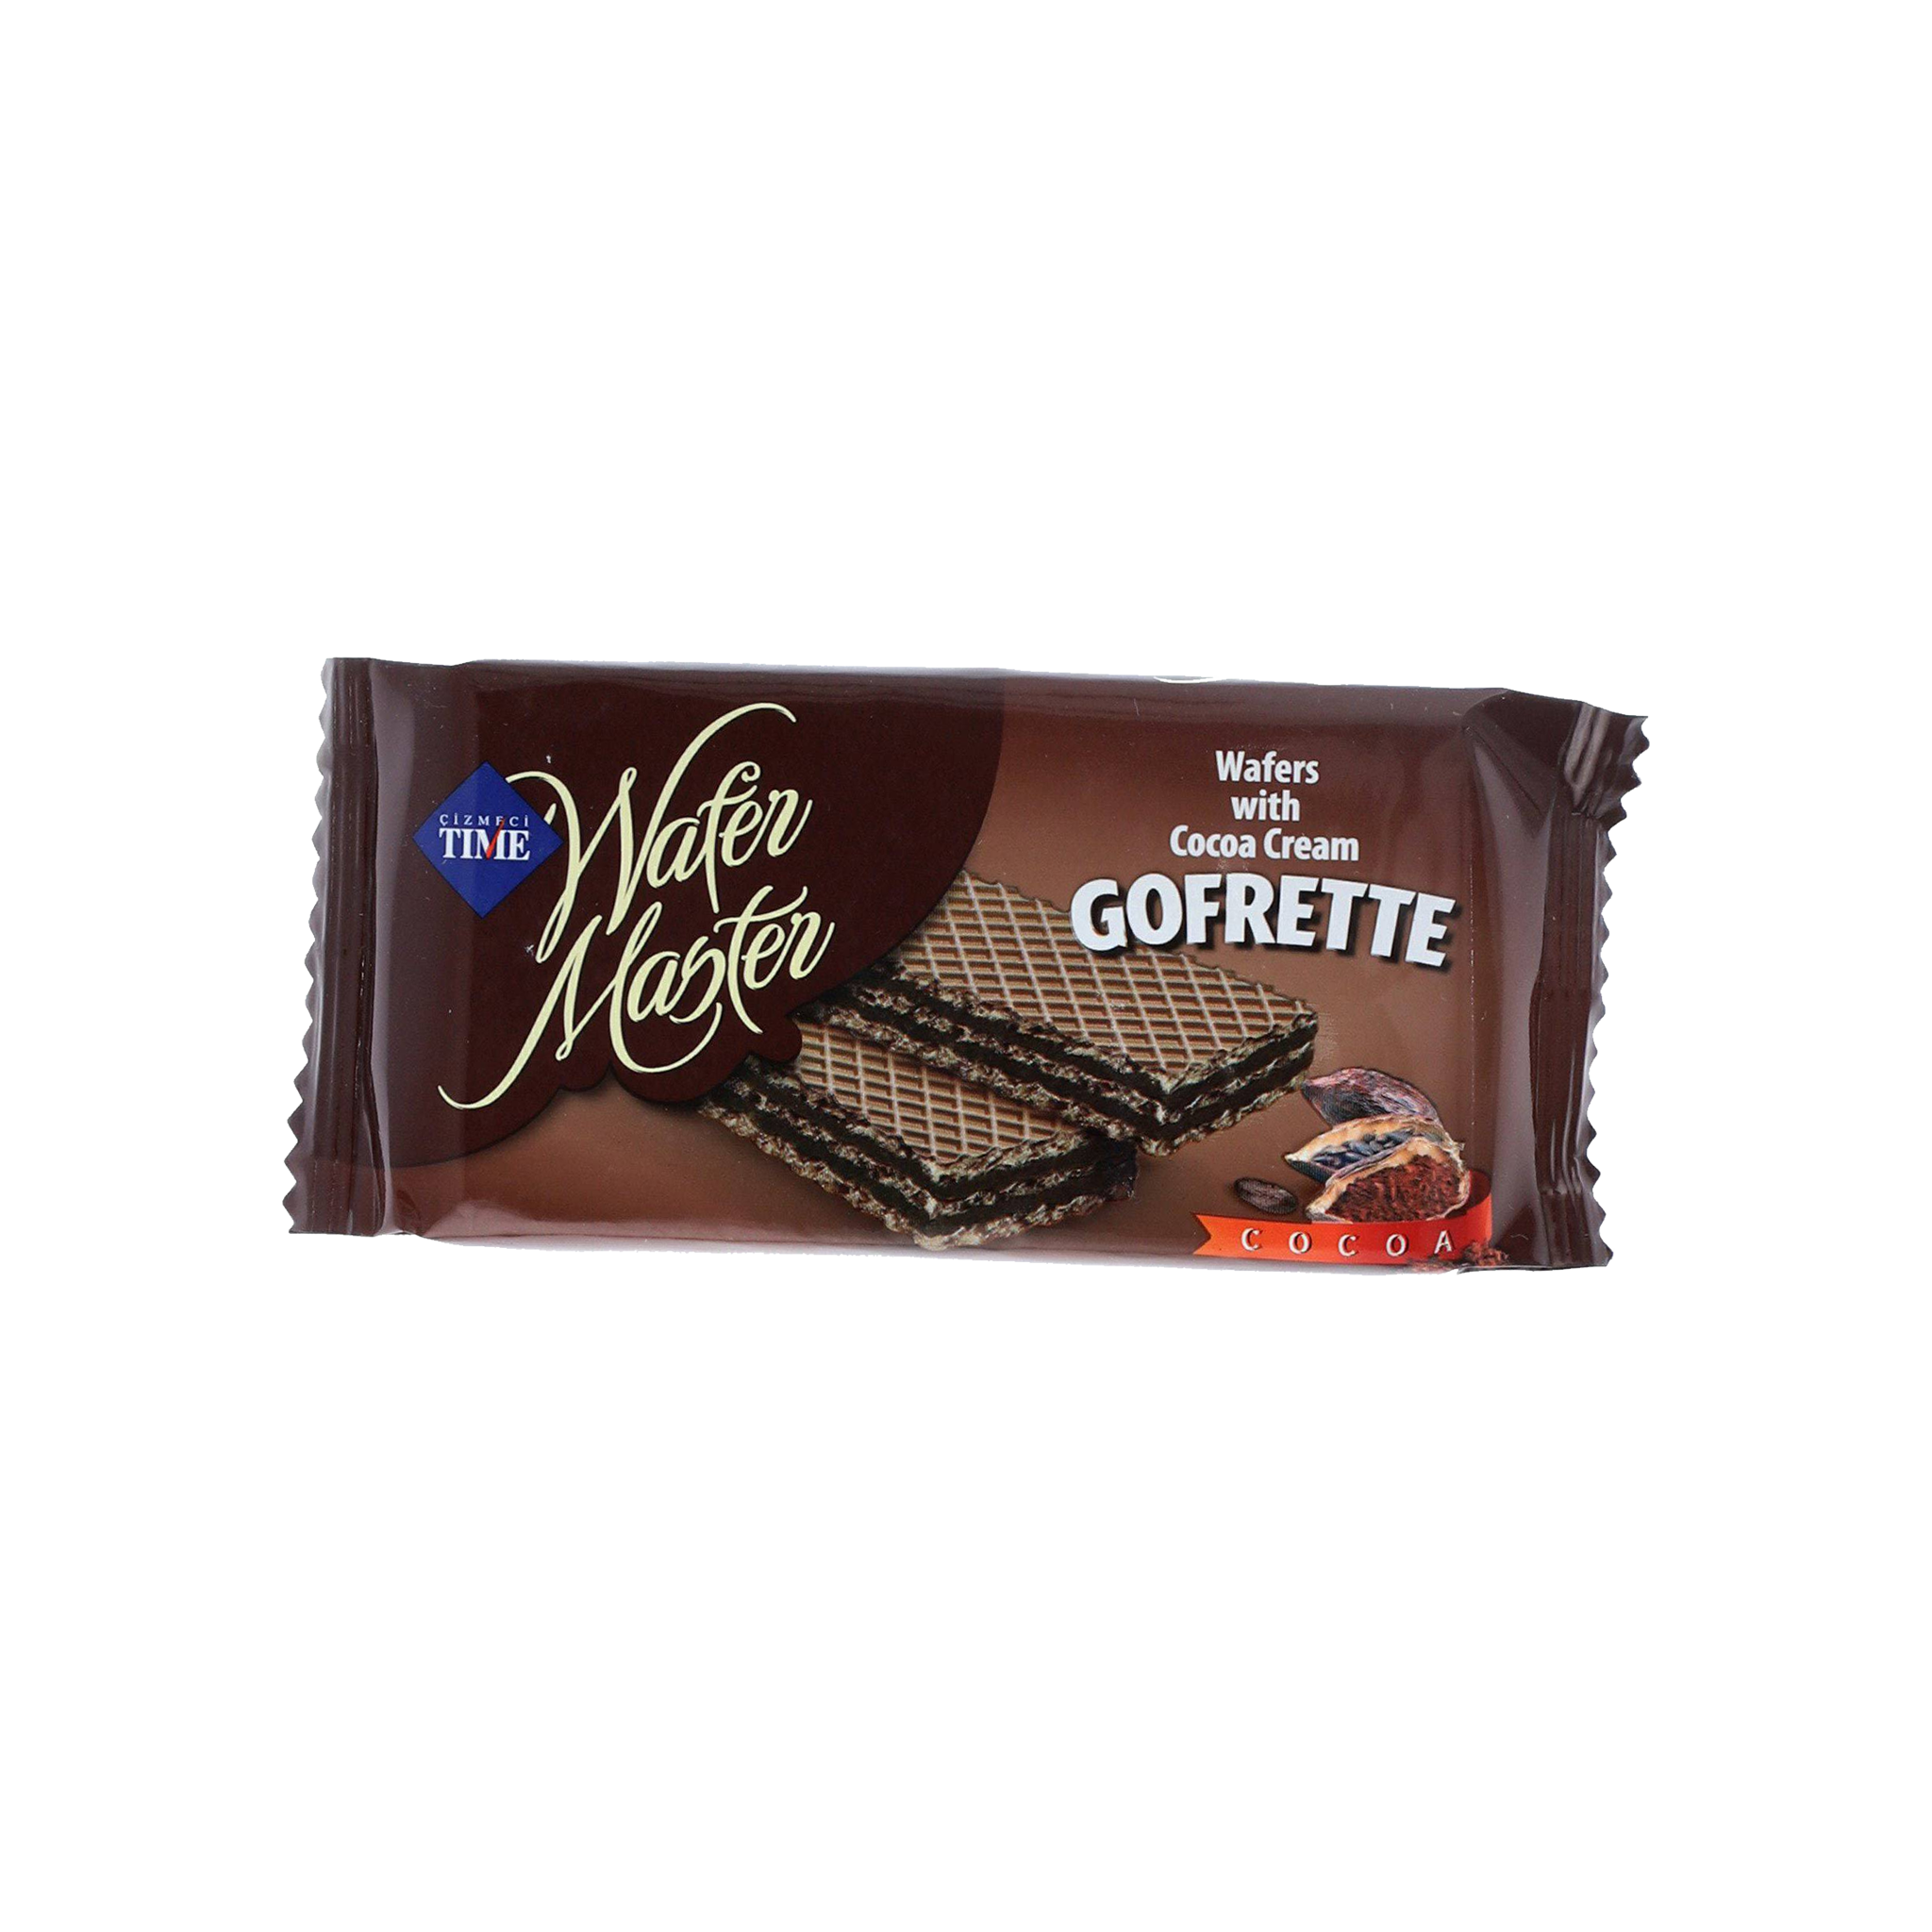 Wafer Master Gofrette cocoa cream 40g